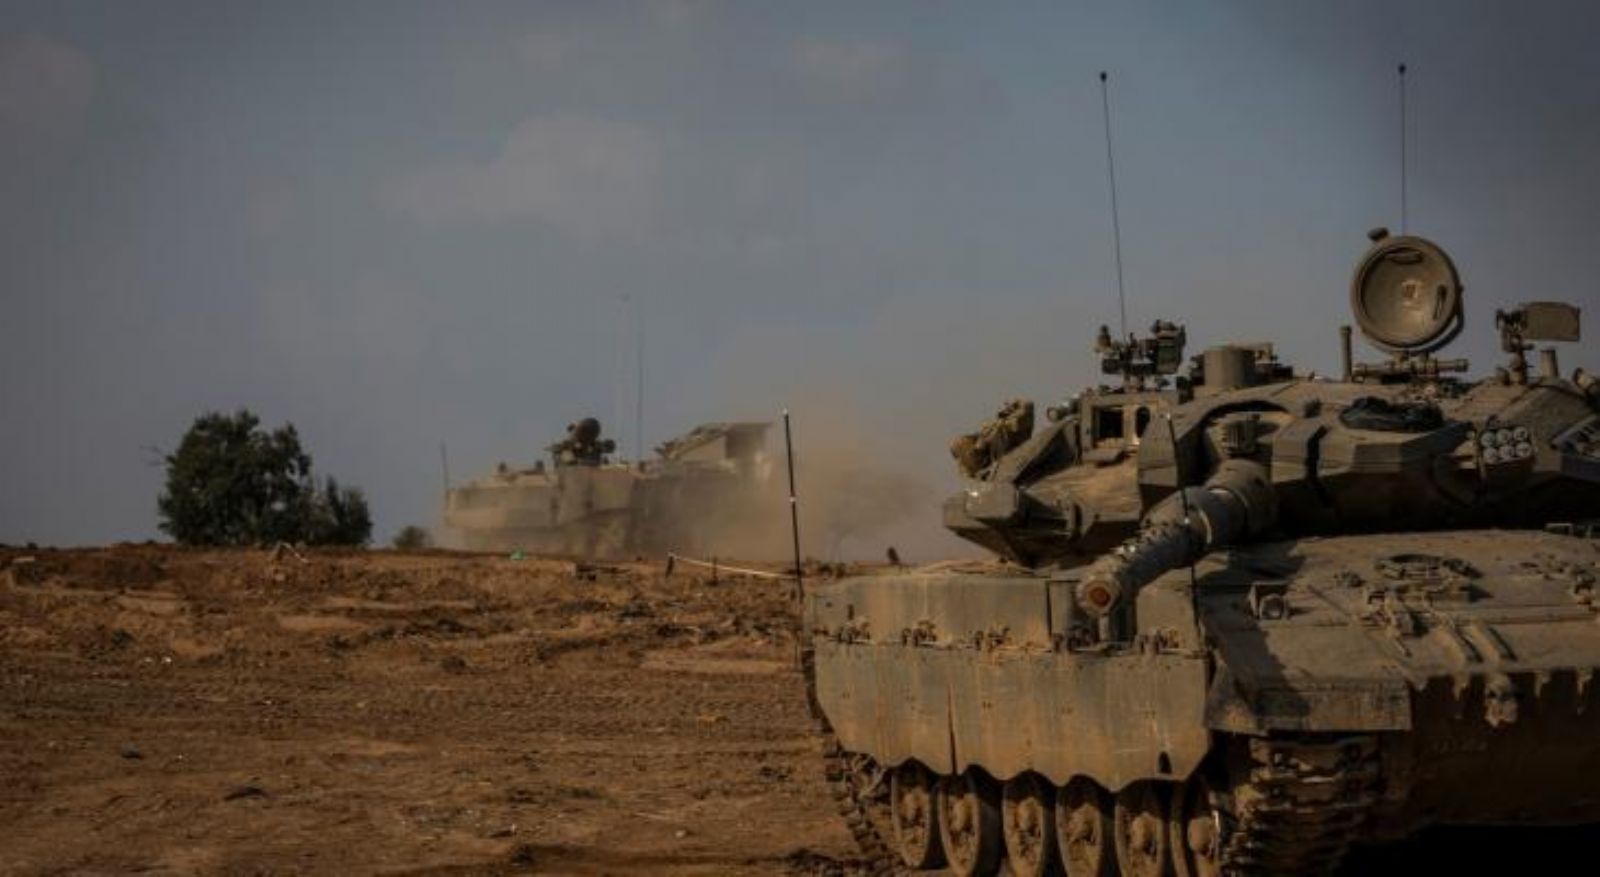 توماس فريدمان: "ترويض" غزة يظل دوما "ضربا من الخيال"